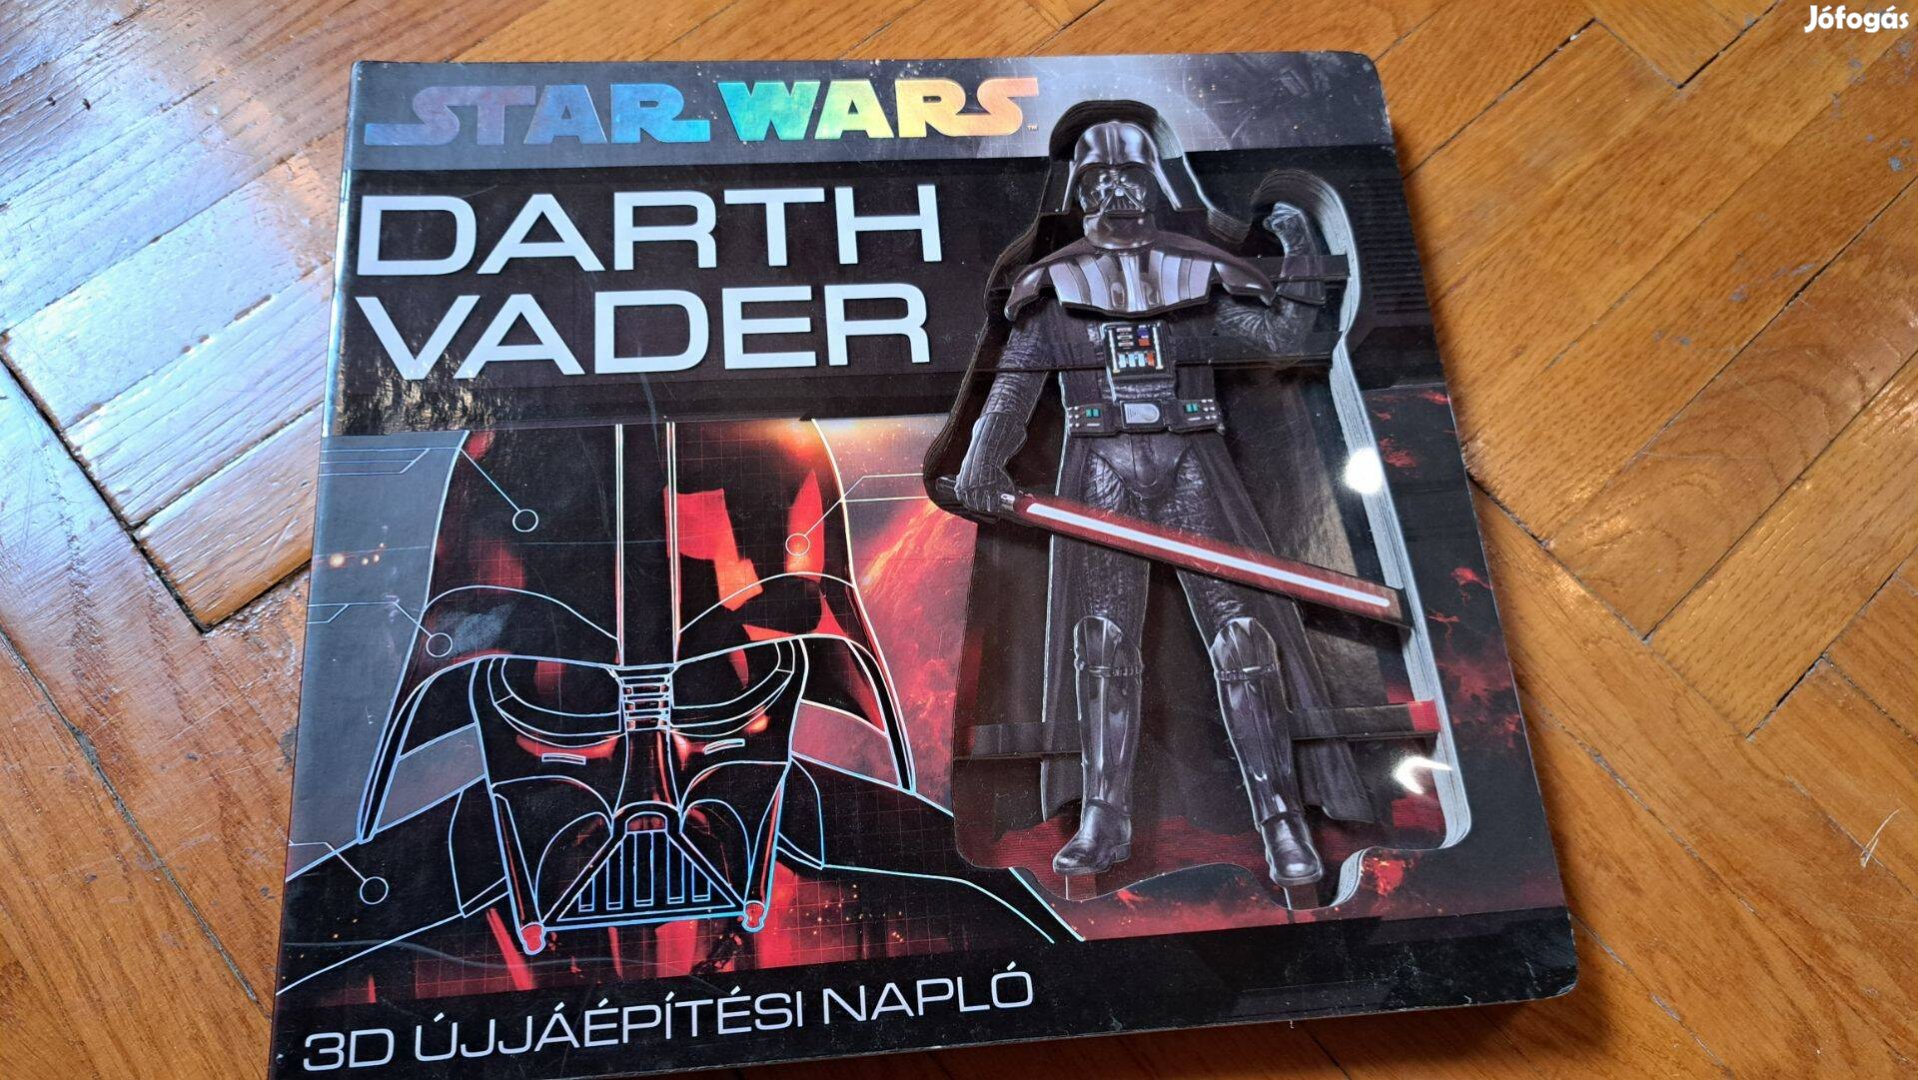 Star Wars Darth Vader könyv